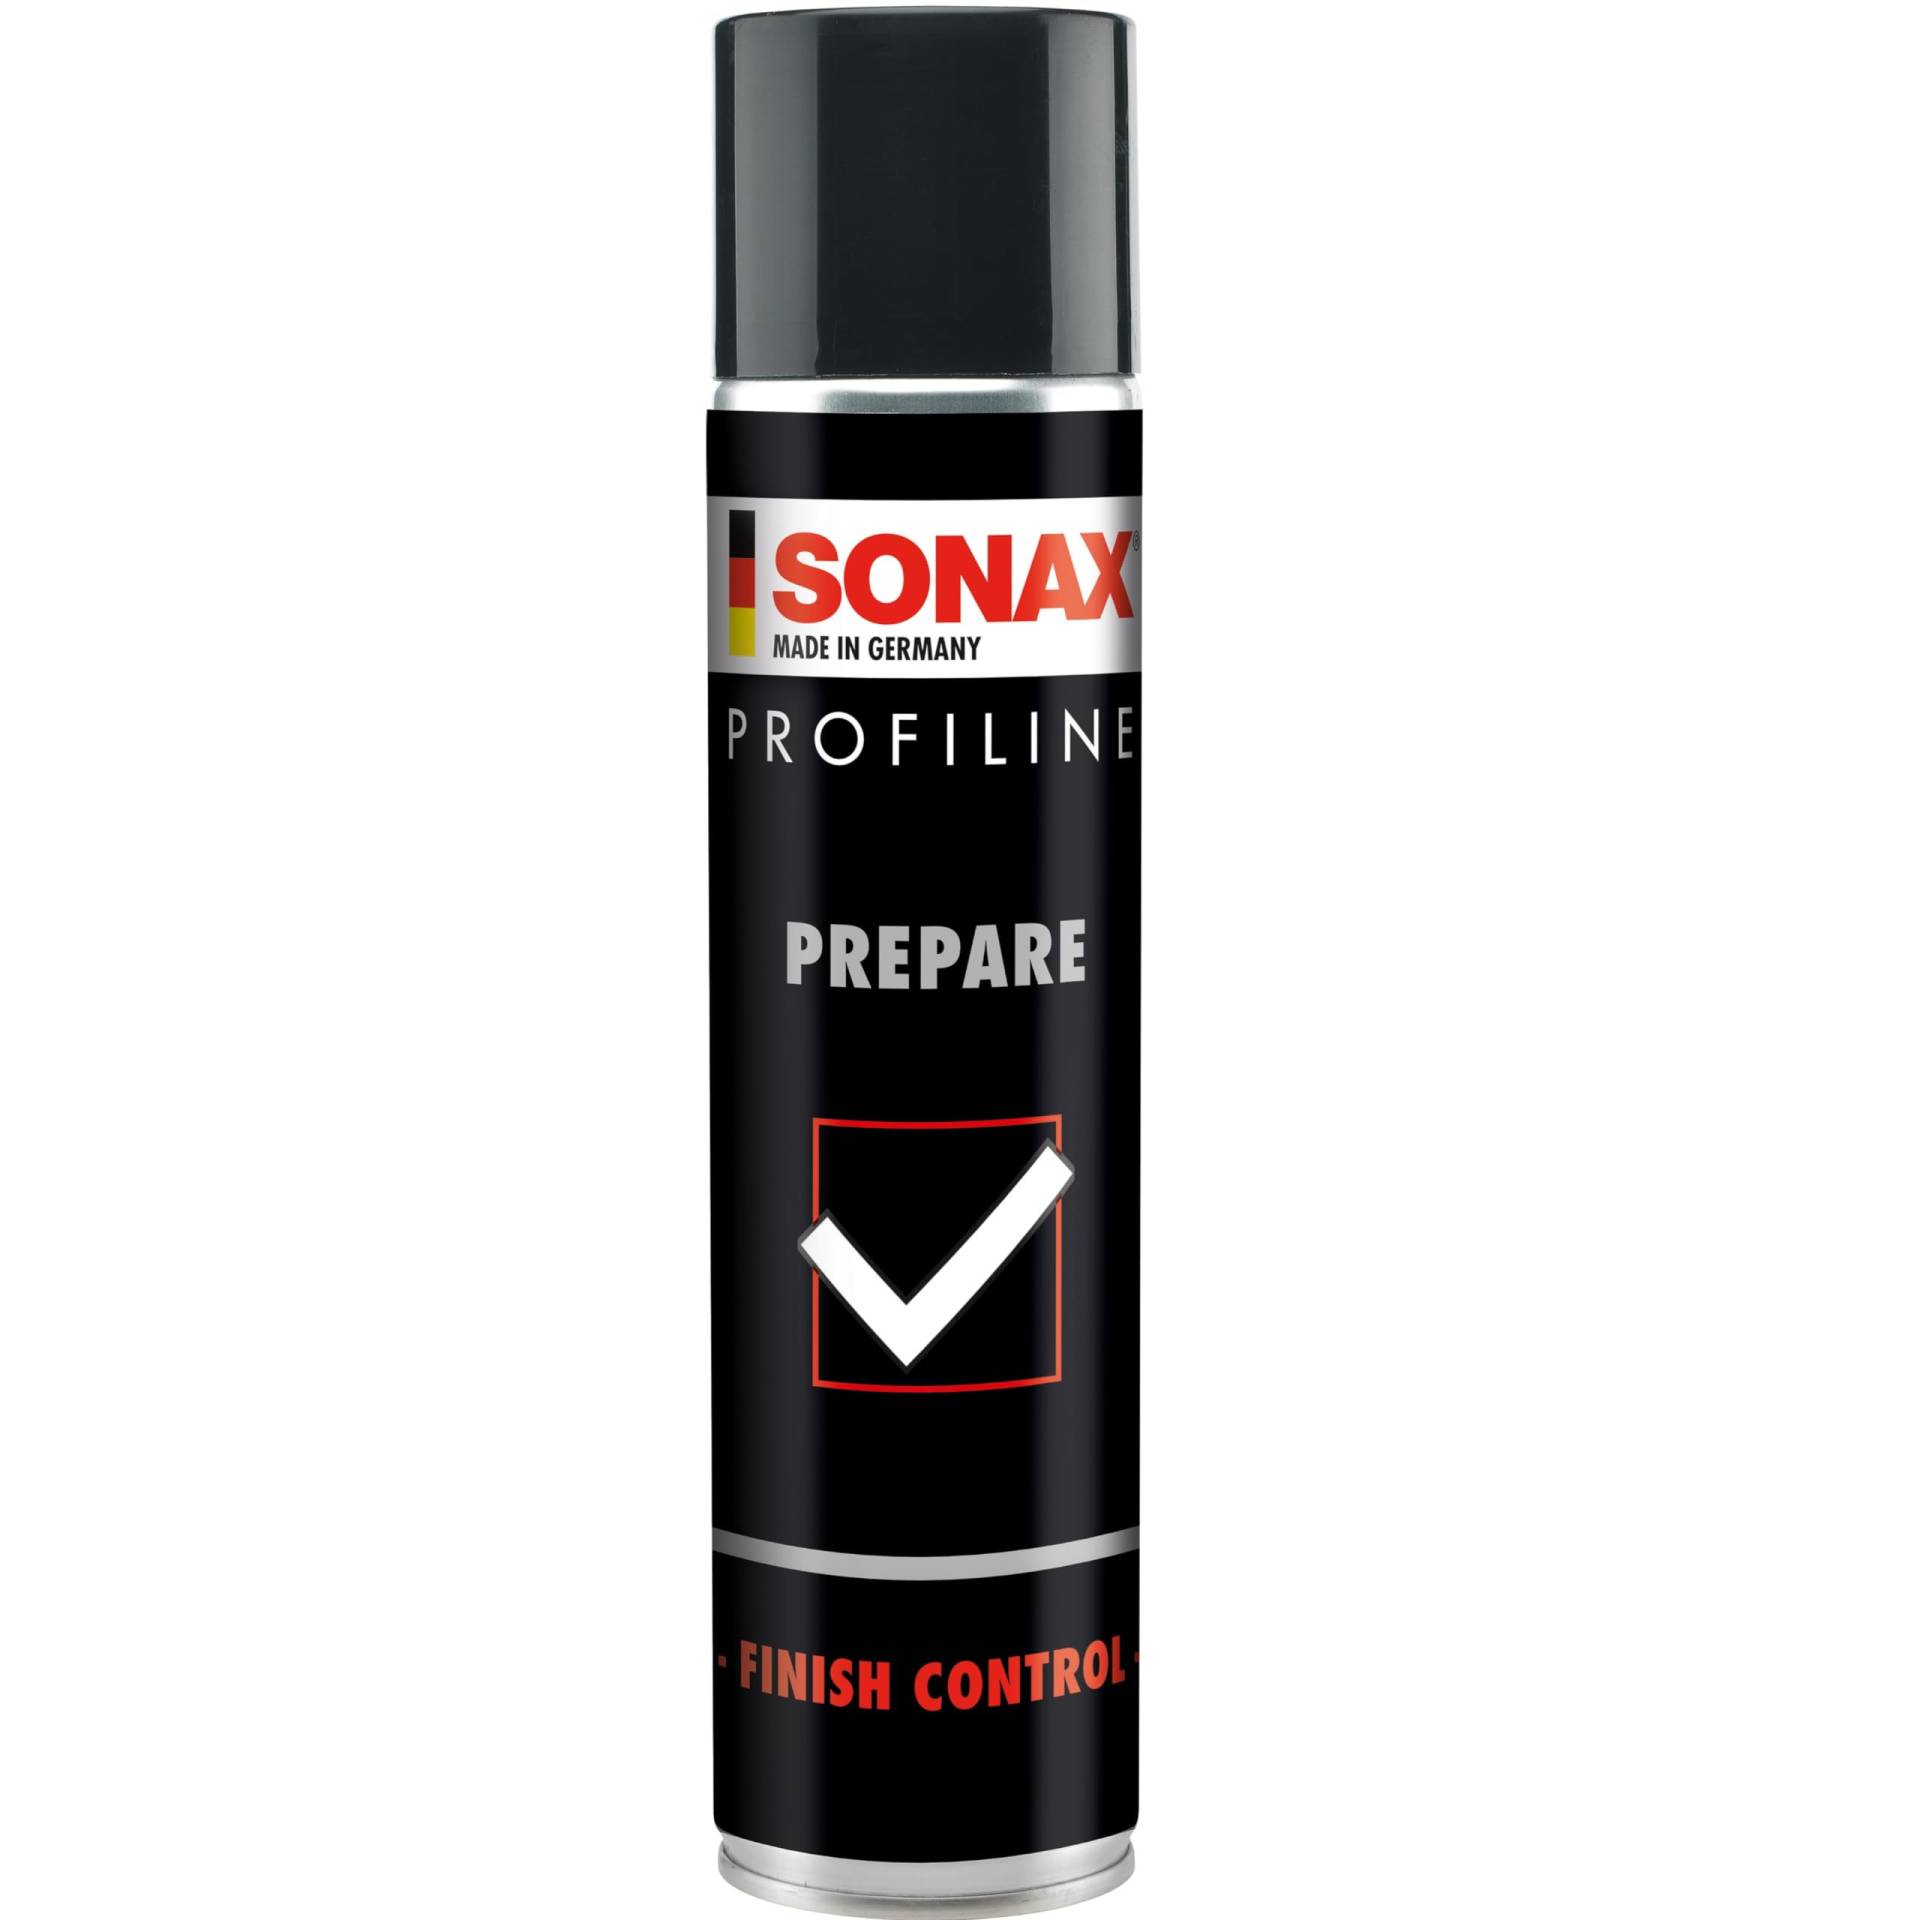 SONAX PROFILINE Prepare (400 ml) spezielles Lösemittelgemisch zum effektiven Entfernen von Fett- und Ölfilmen auf Fahrzeuglacken, Art-Nr. 02373000 von SONAX